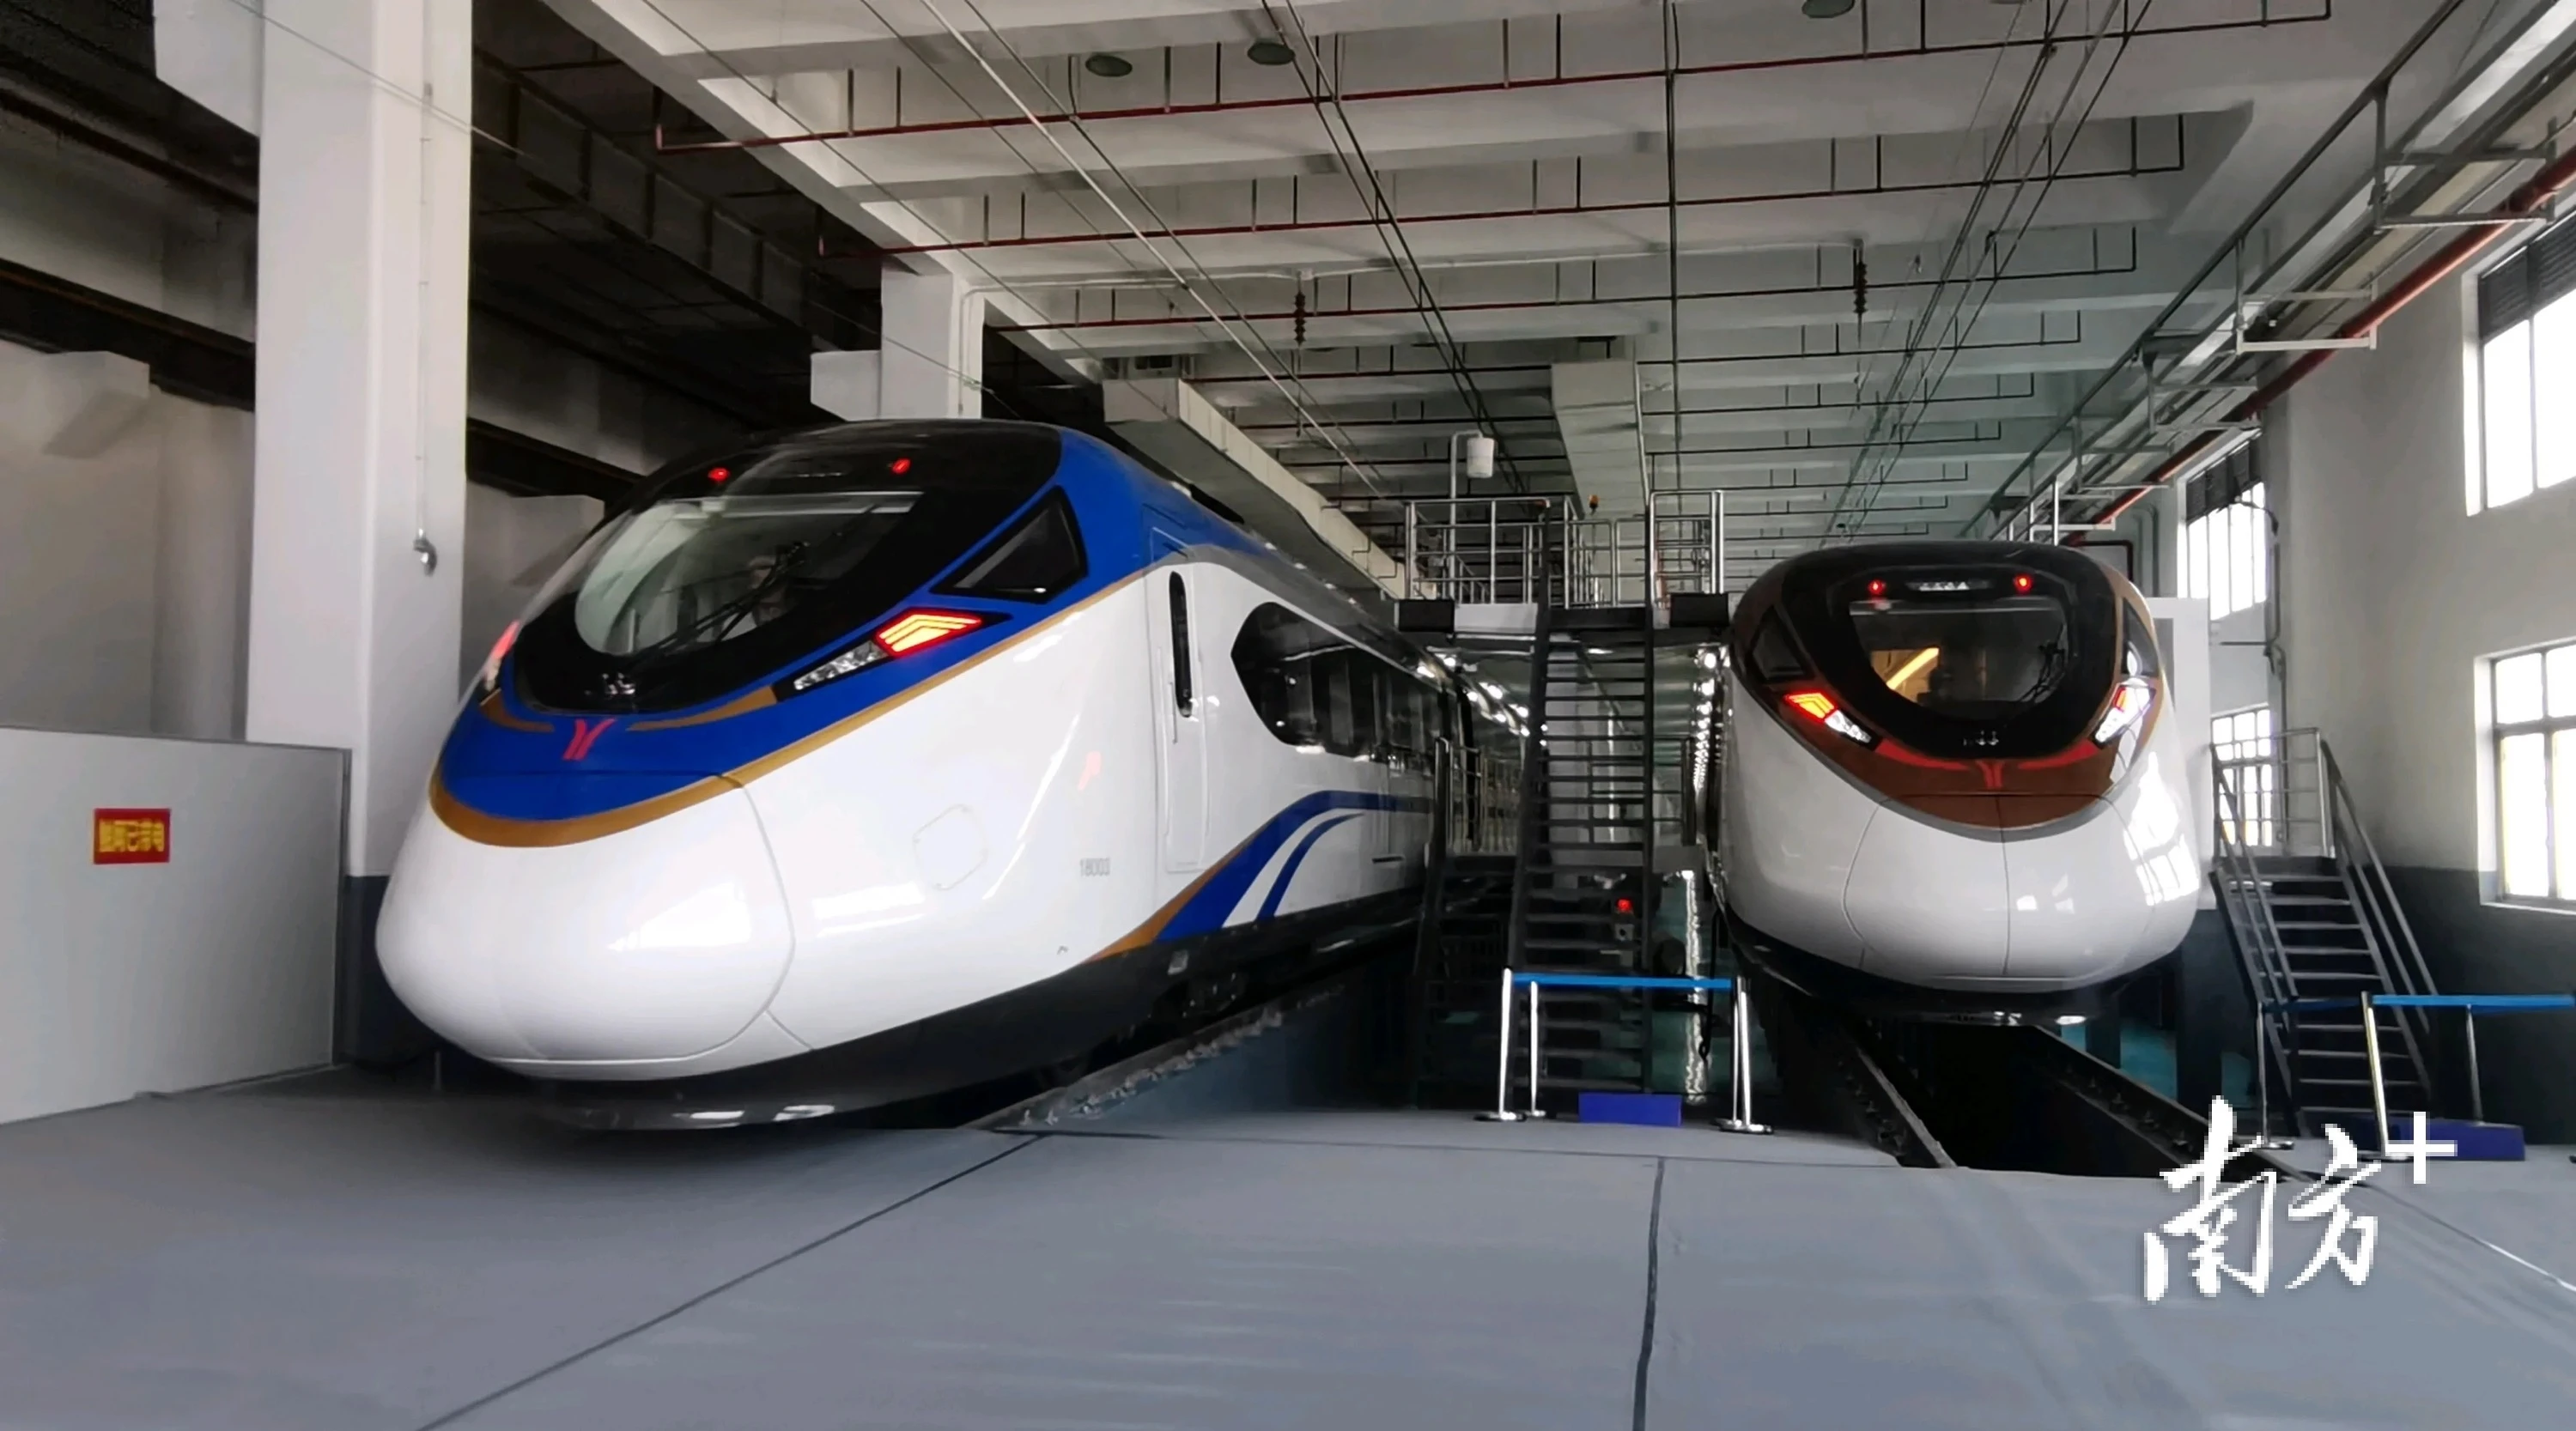 根据《粤港澳大湾区城际铁路建设规划》,广州市牵头推进的广州都市圈